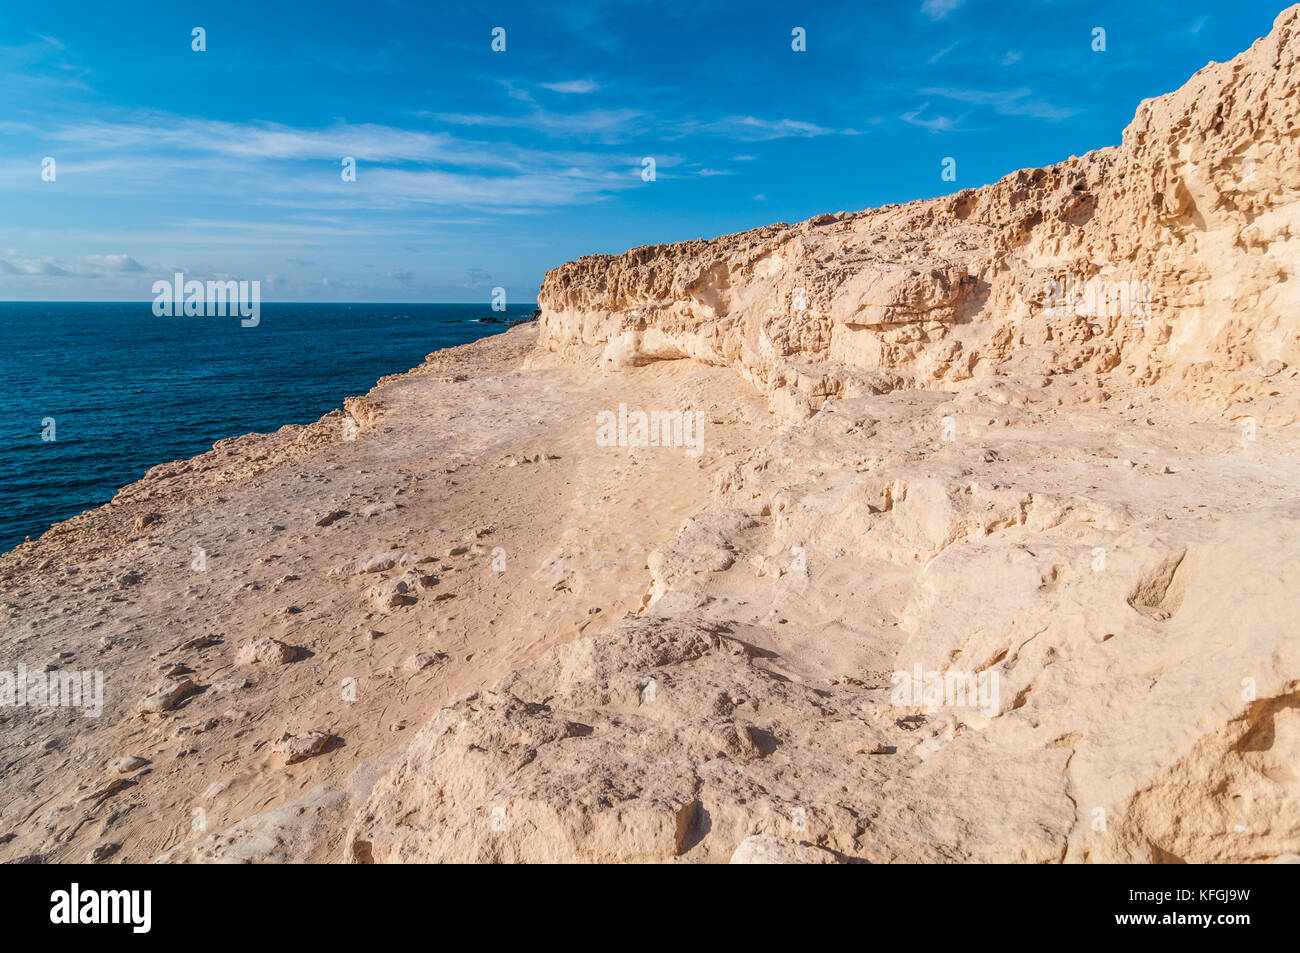 Dune del Pliocene, calcarenites formata dai resti fossili di Shell e alghe marine, gli indicatori dell'esistenza di un clima più mite. Ajuy, Fuerteventura, Foto Stock